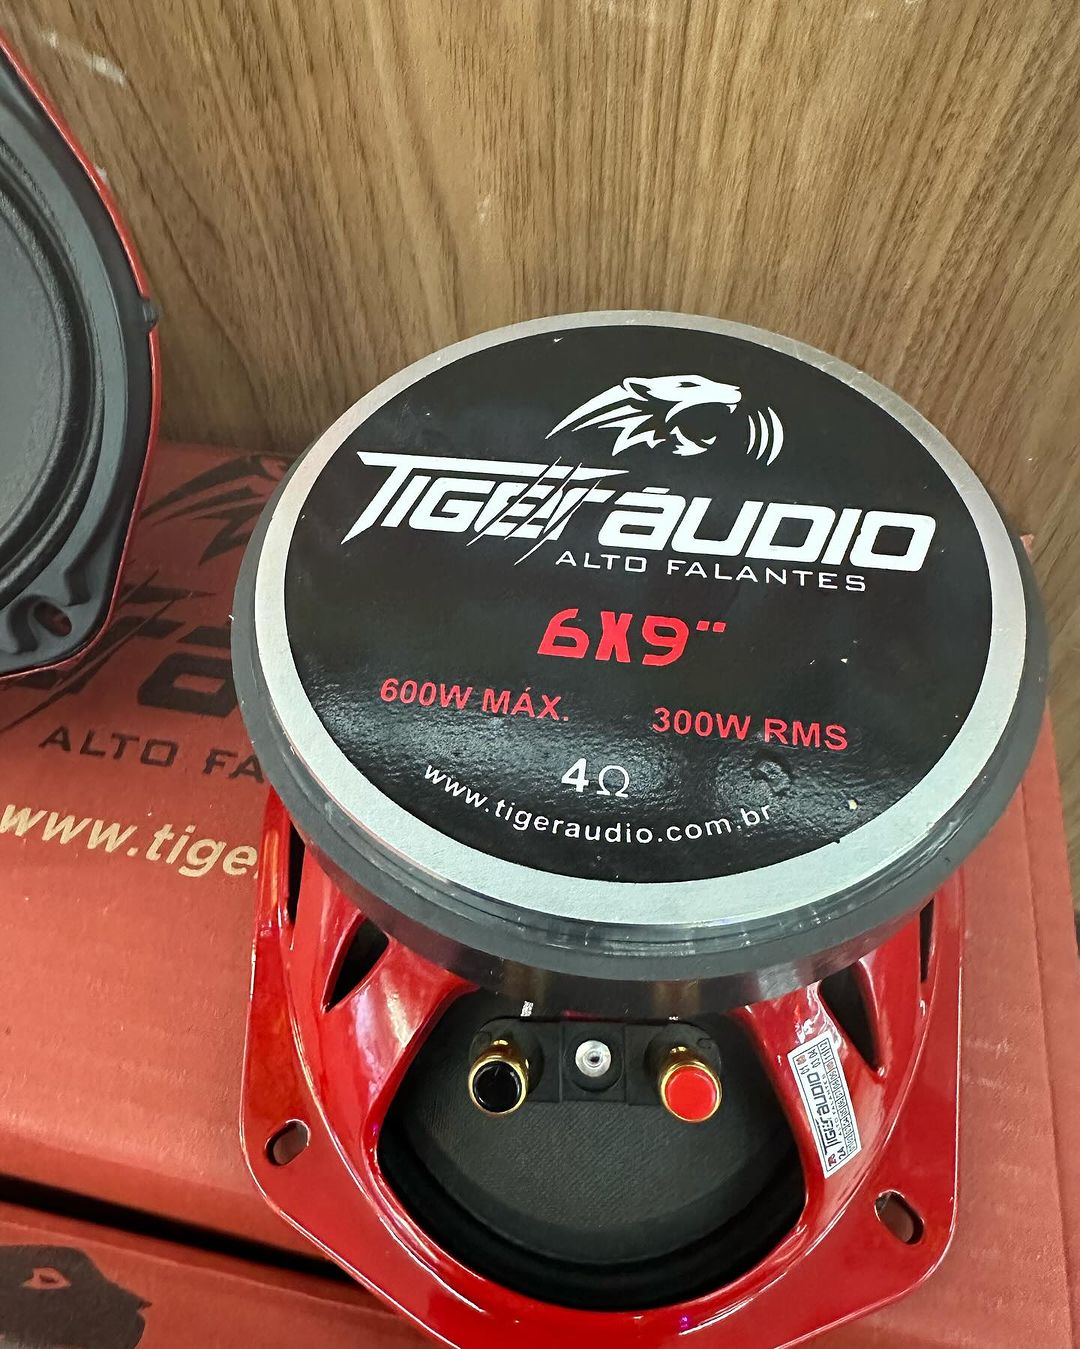 alto falante 6x9 tiger audio 300 rms medio trio goiano 4